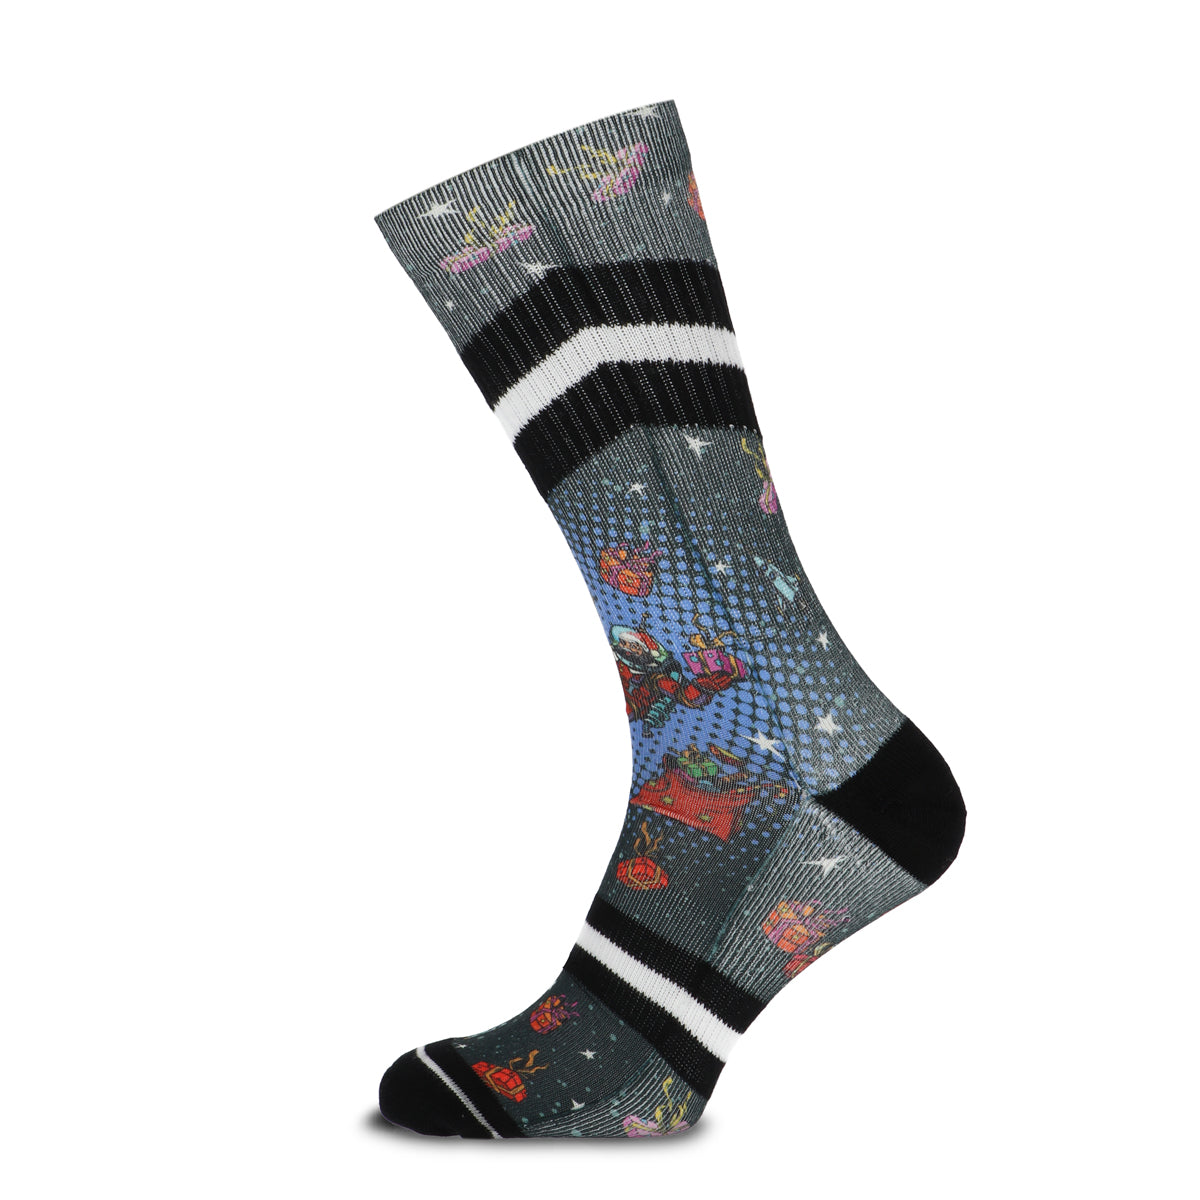 Xmas Space Present men's socks